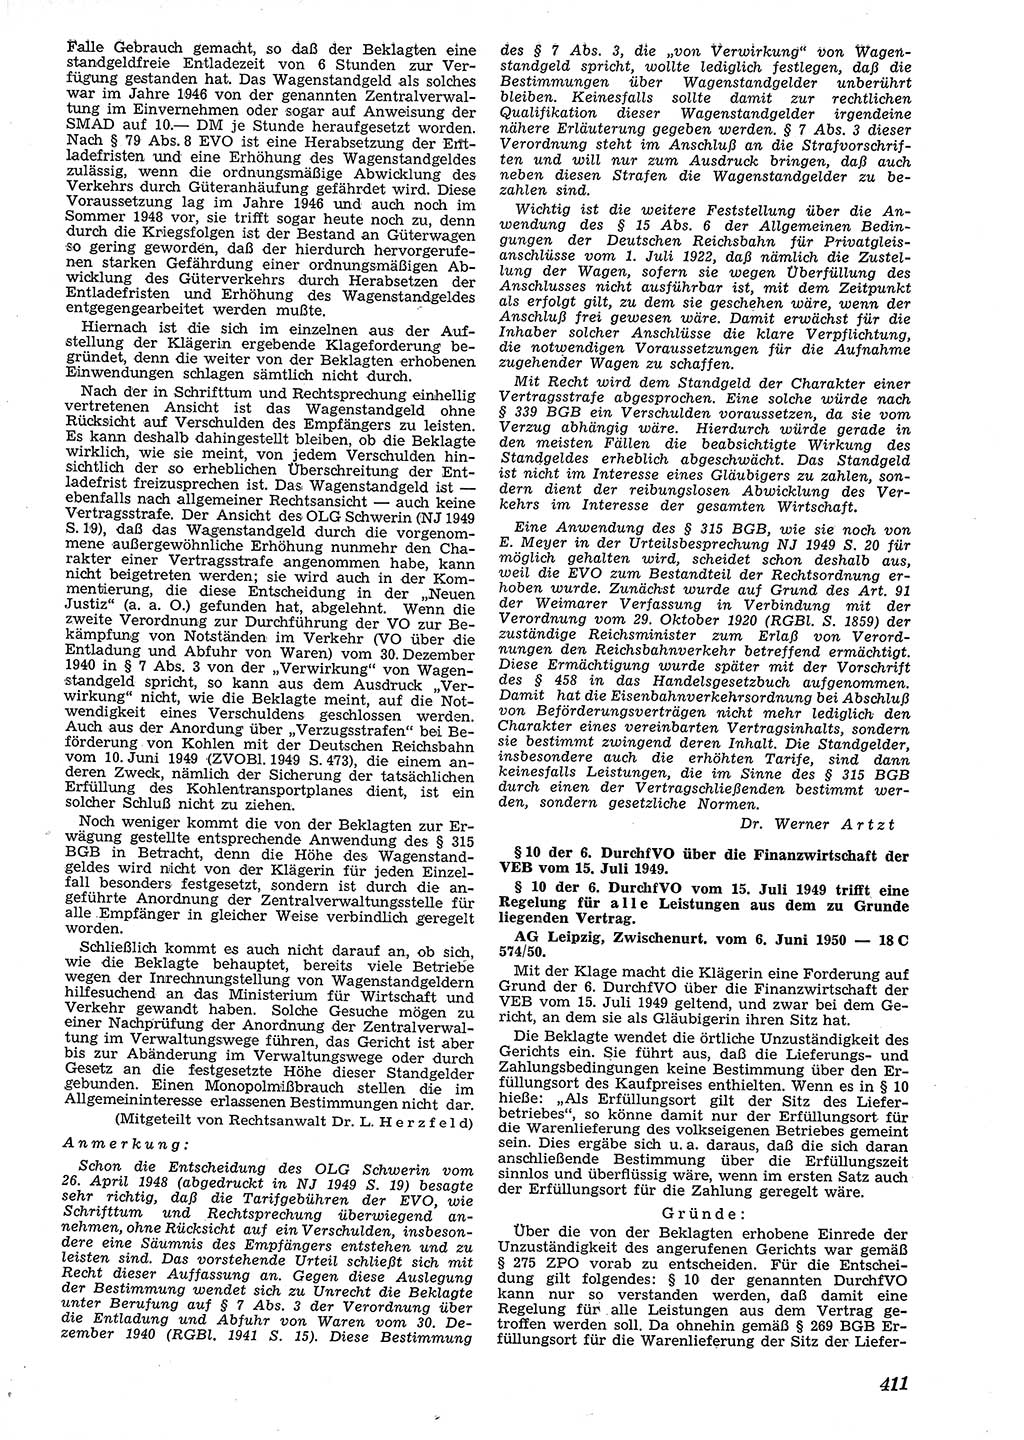 Neue Justiz (NJ), Zeitschrift für Recht und Rechtswissenschaft [Deutsche Demokratische Republik (DDR)], 4. Jahrgang 1950, Seite 411 (NJ DDR 1950, S. 411)